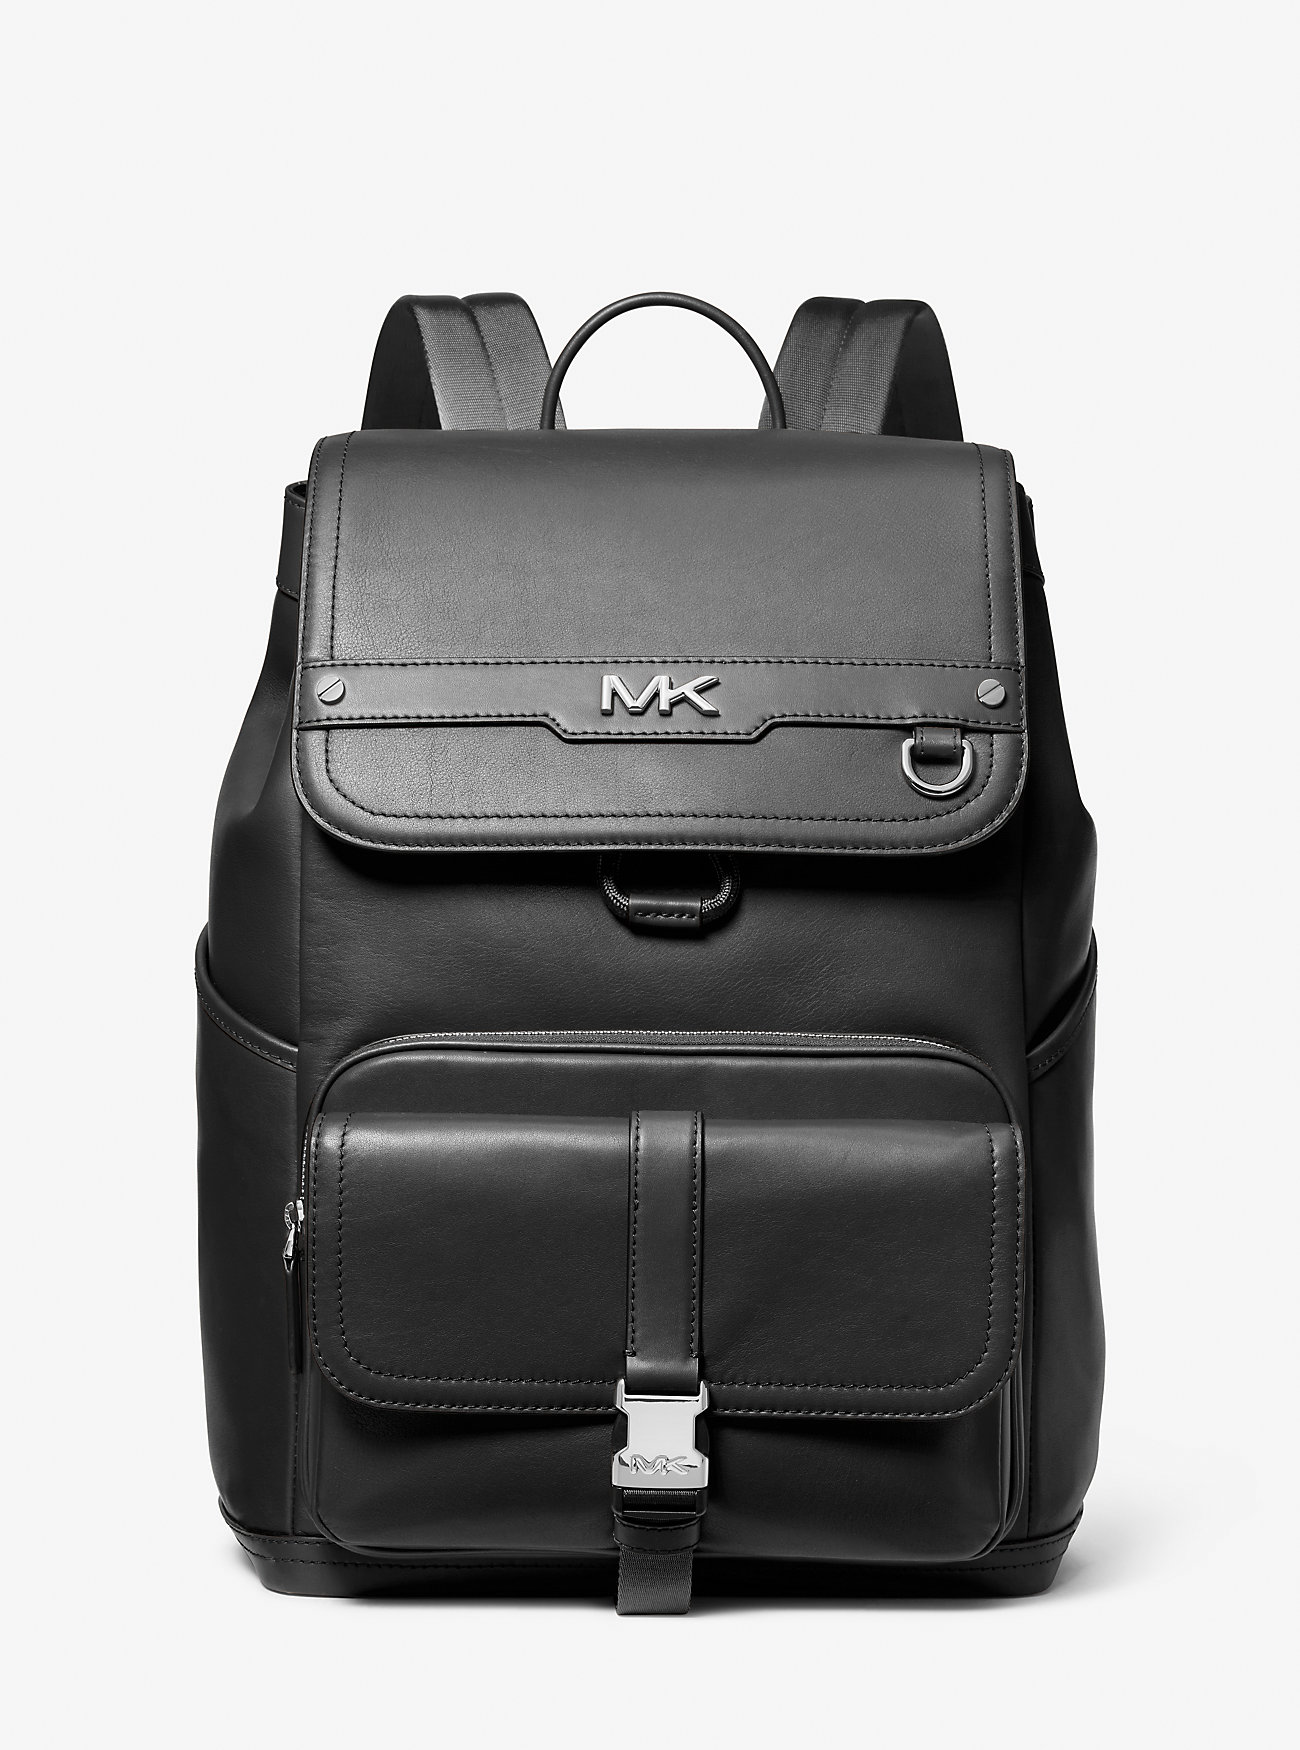 Michaelkors Varick Leather Backpack